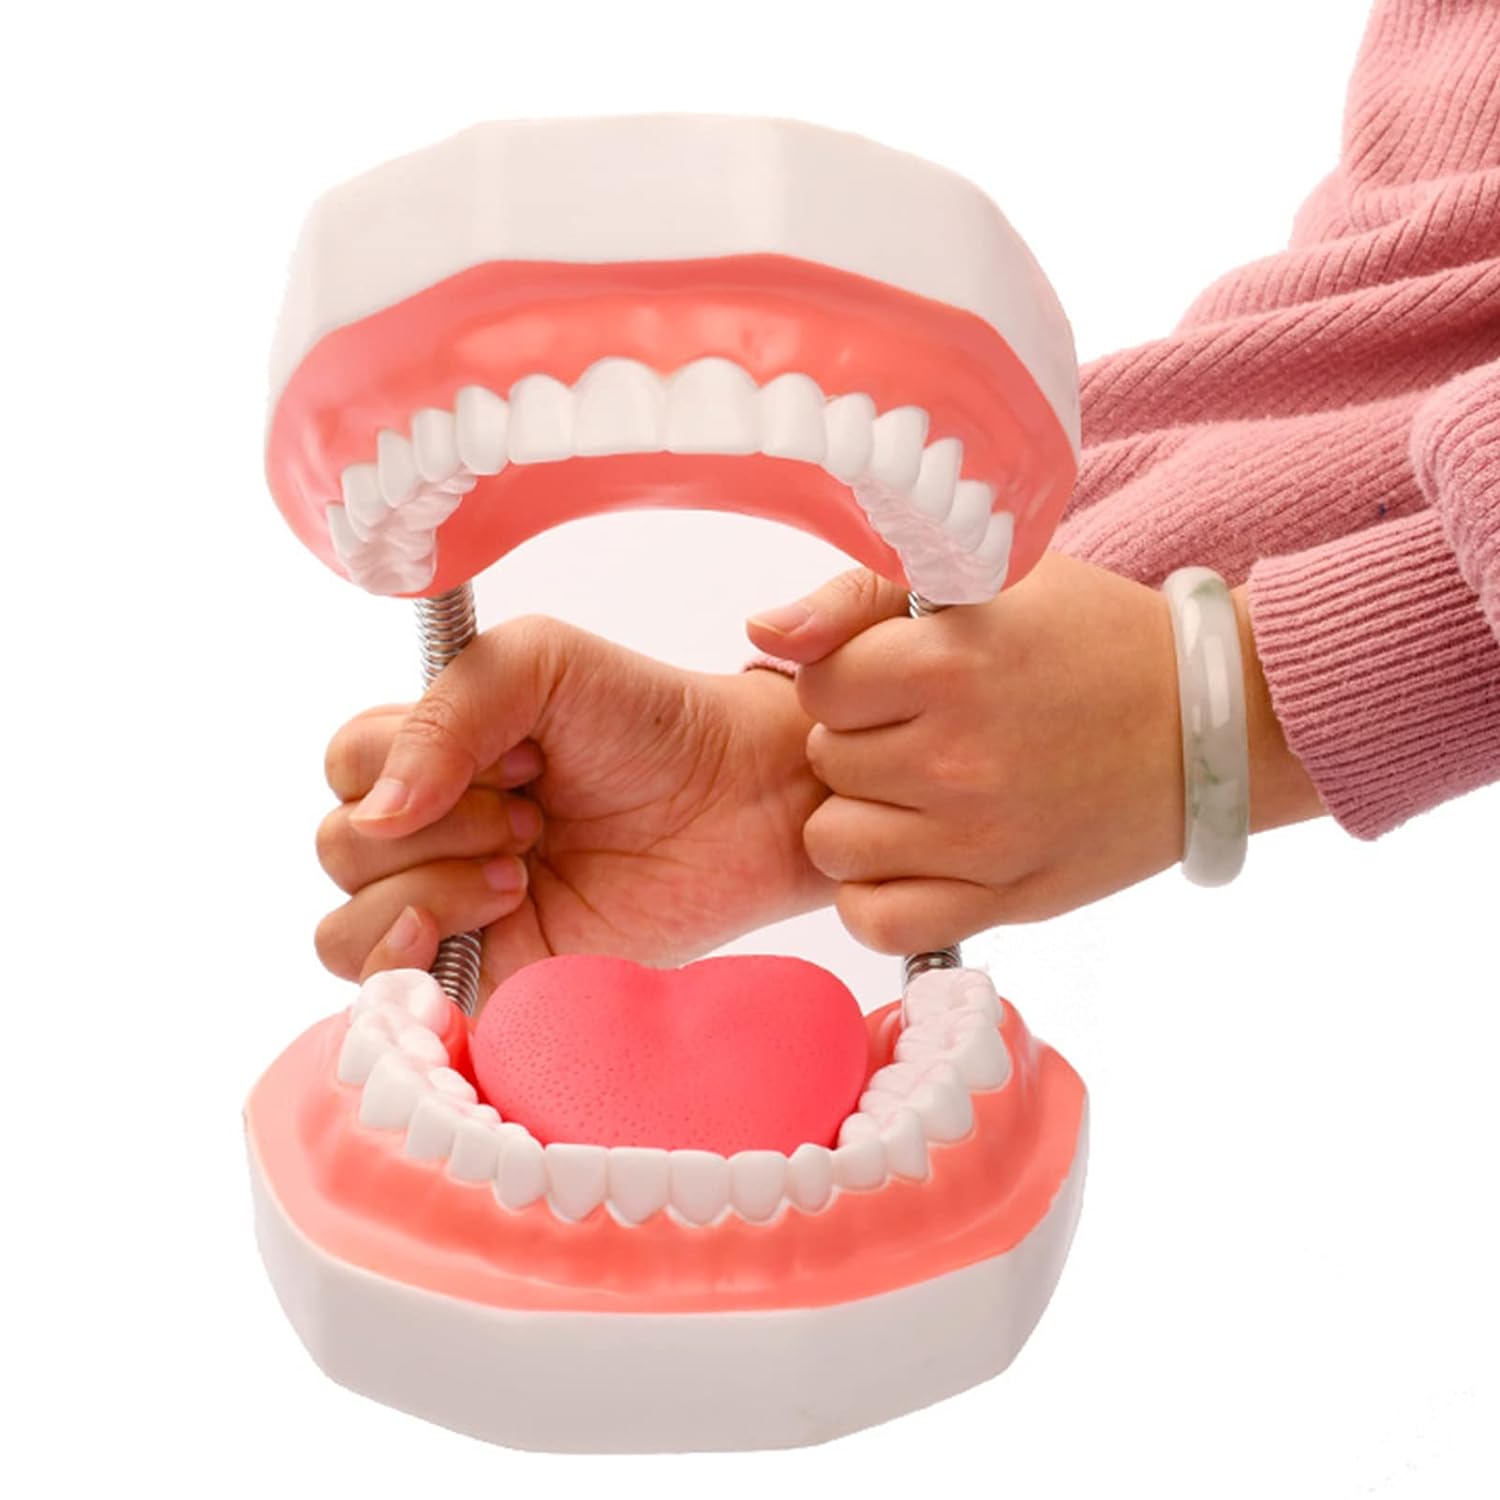 6倍の倍率歯科モデル 歯の模型患者説明用 歯医者 おもちゃ舌模型 上顎/下顎モデル メンタリング/教育/インターンシップ/研究のため 歯磨きガイドモデル